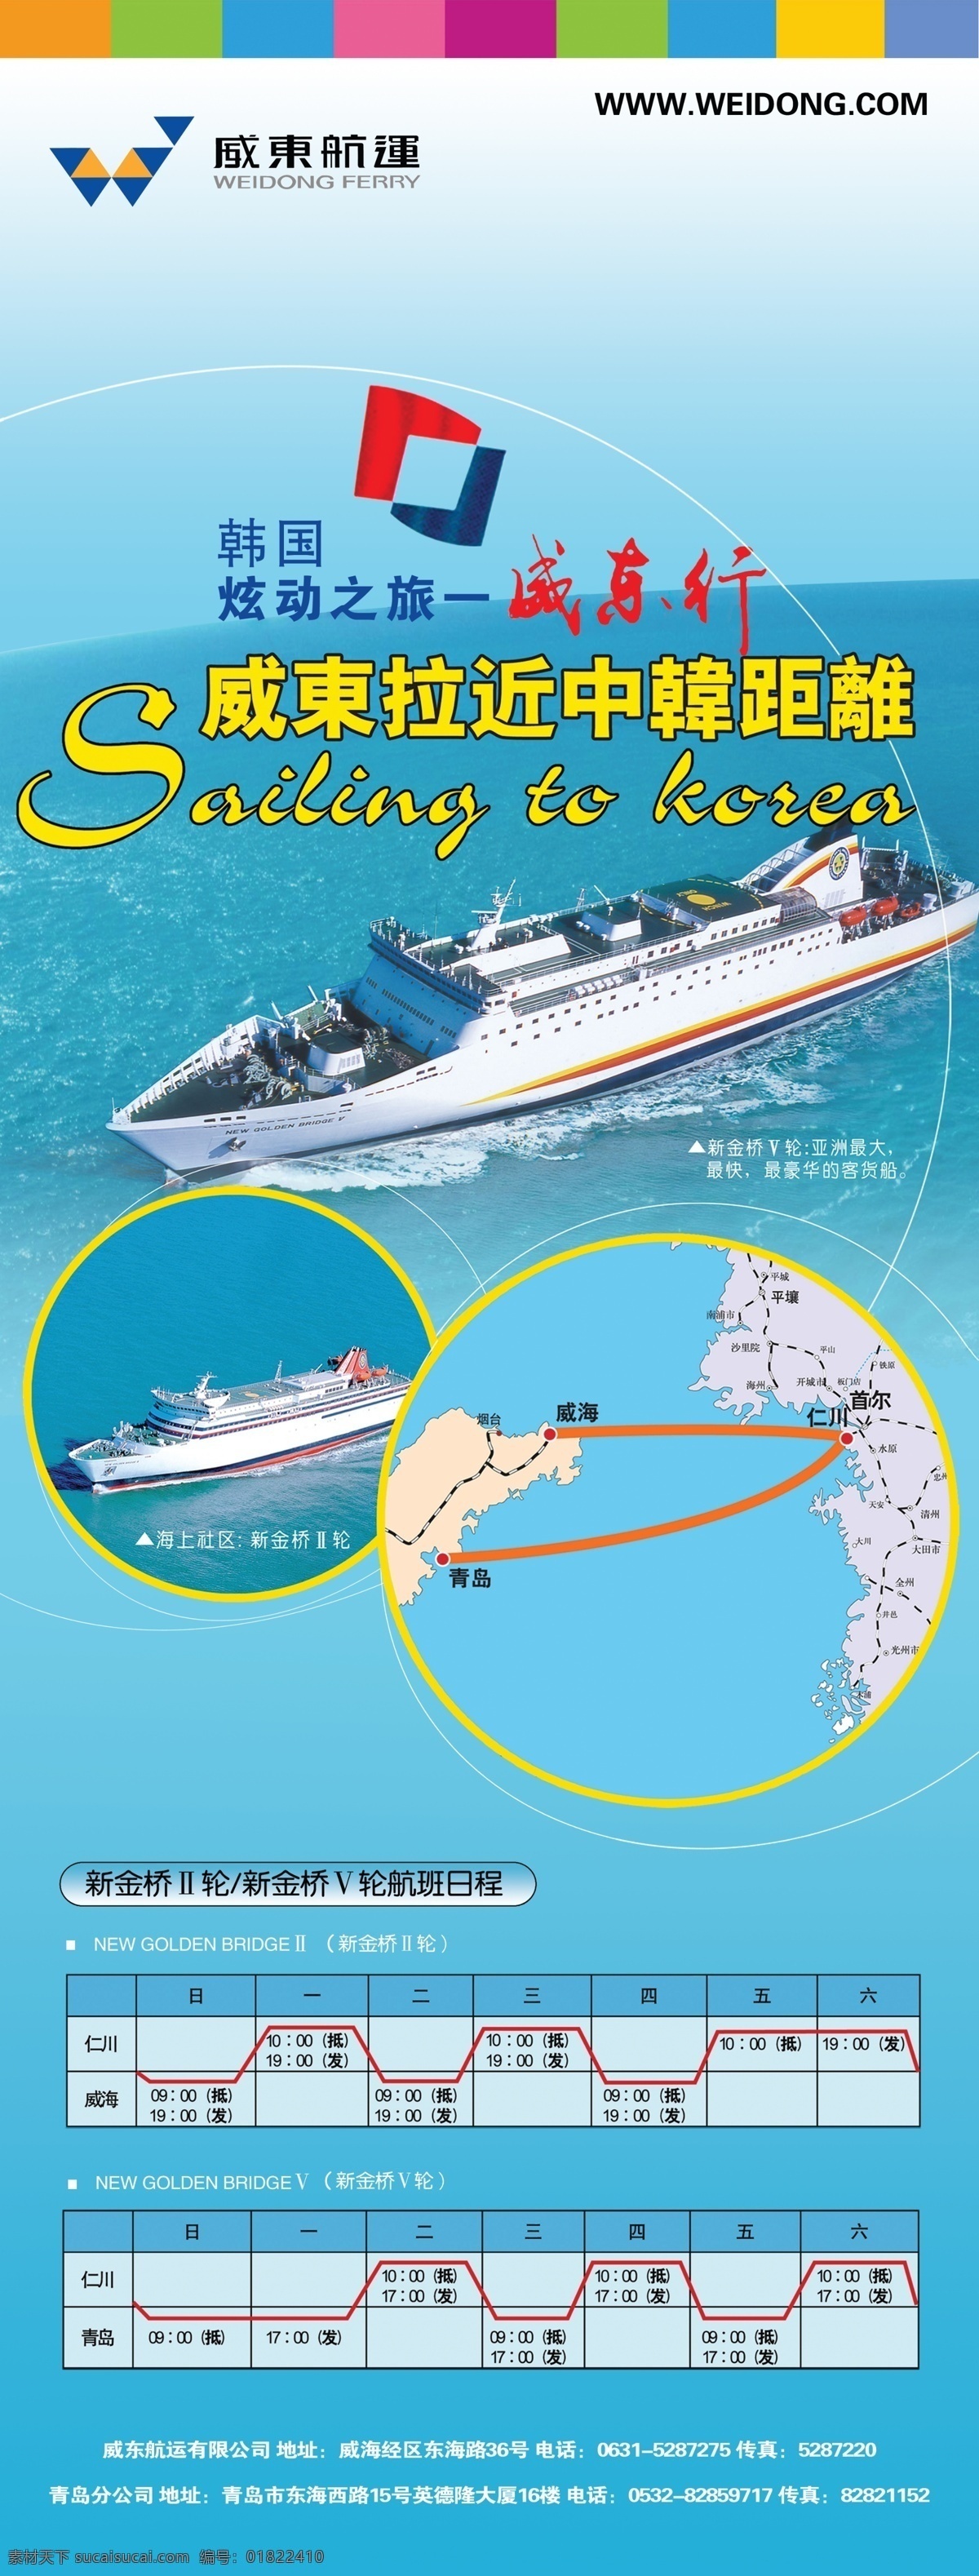 威东 航运 航线 时间表 货轮 轮船 韩国之旅 原创设计 原创海报